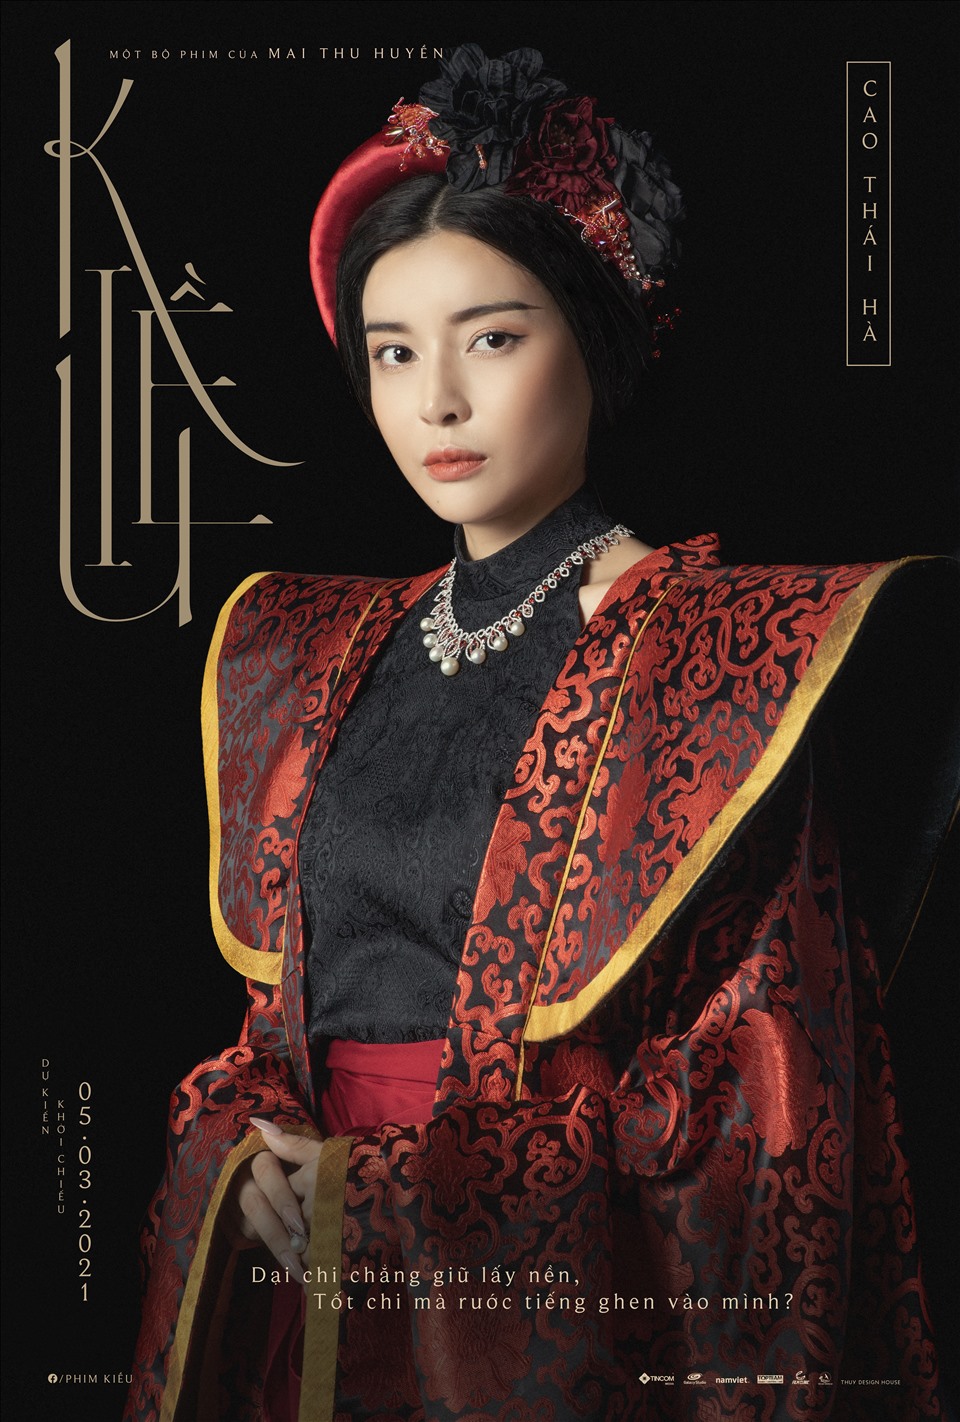 Mới đây, nhà sản xuất phim Kiều đã công bố nữ diễn viên Cao Thái Hà vào vai Hoạn Thư - một biểu tượng ghen tuông trong văn học Việt Nam. Ảnh: Kiều.